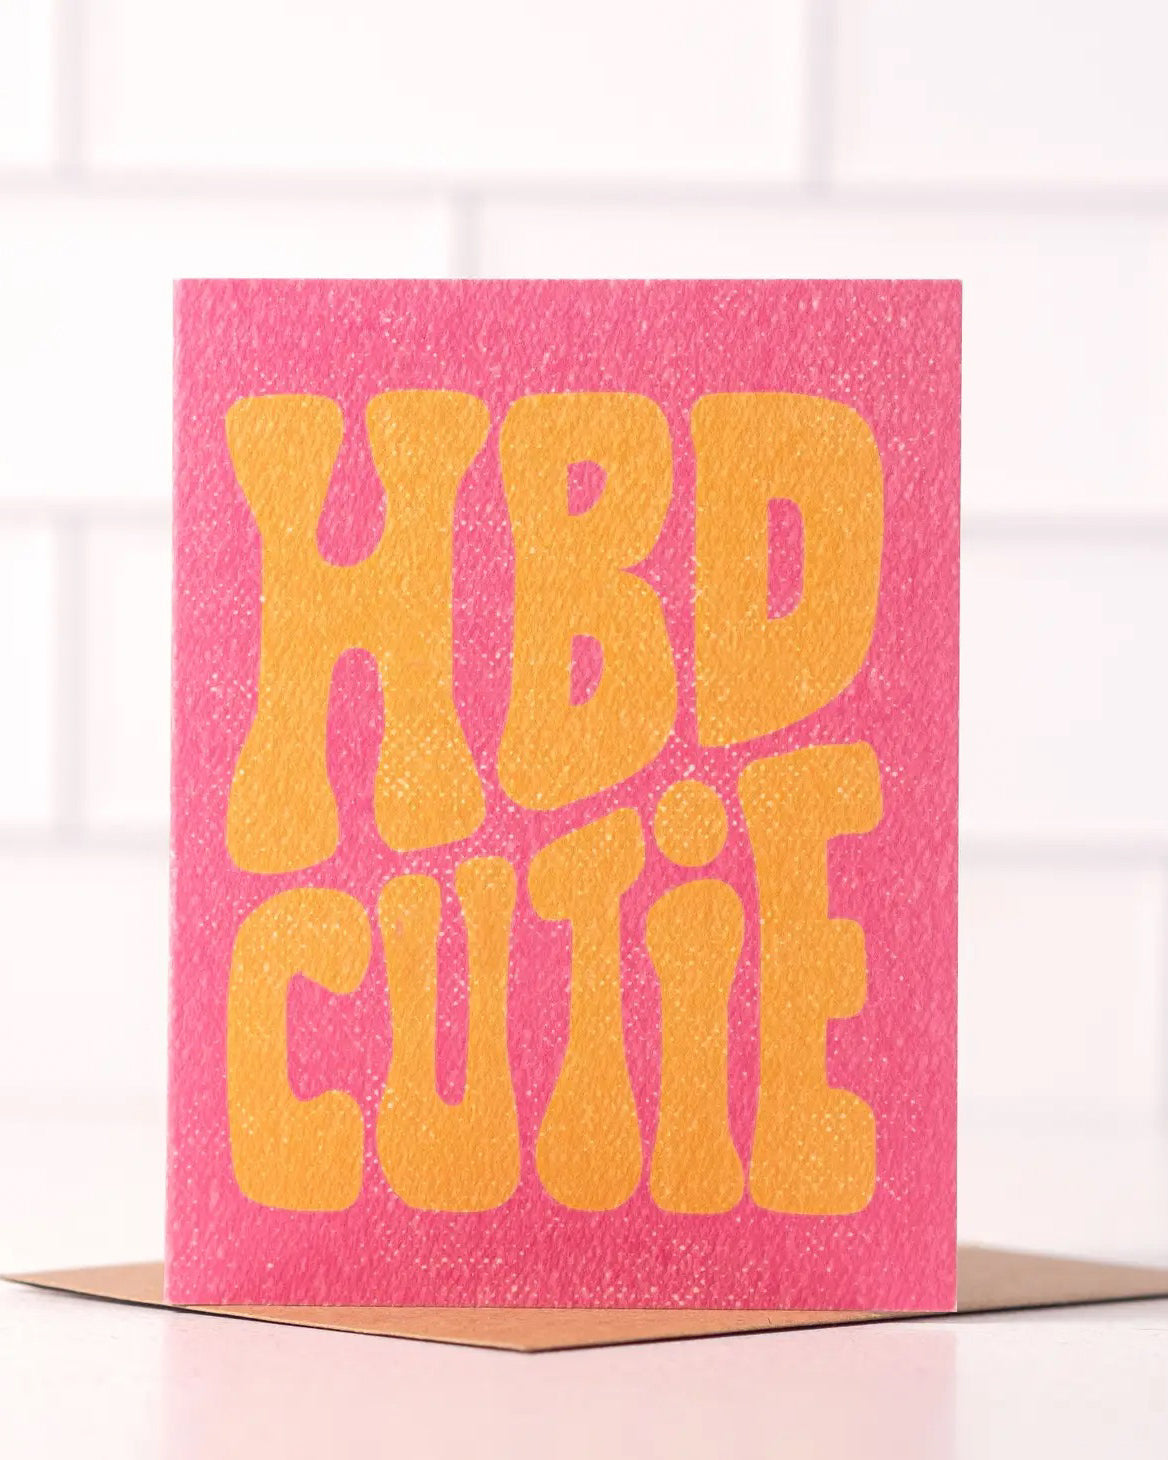 HBD Cutie Card